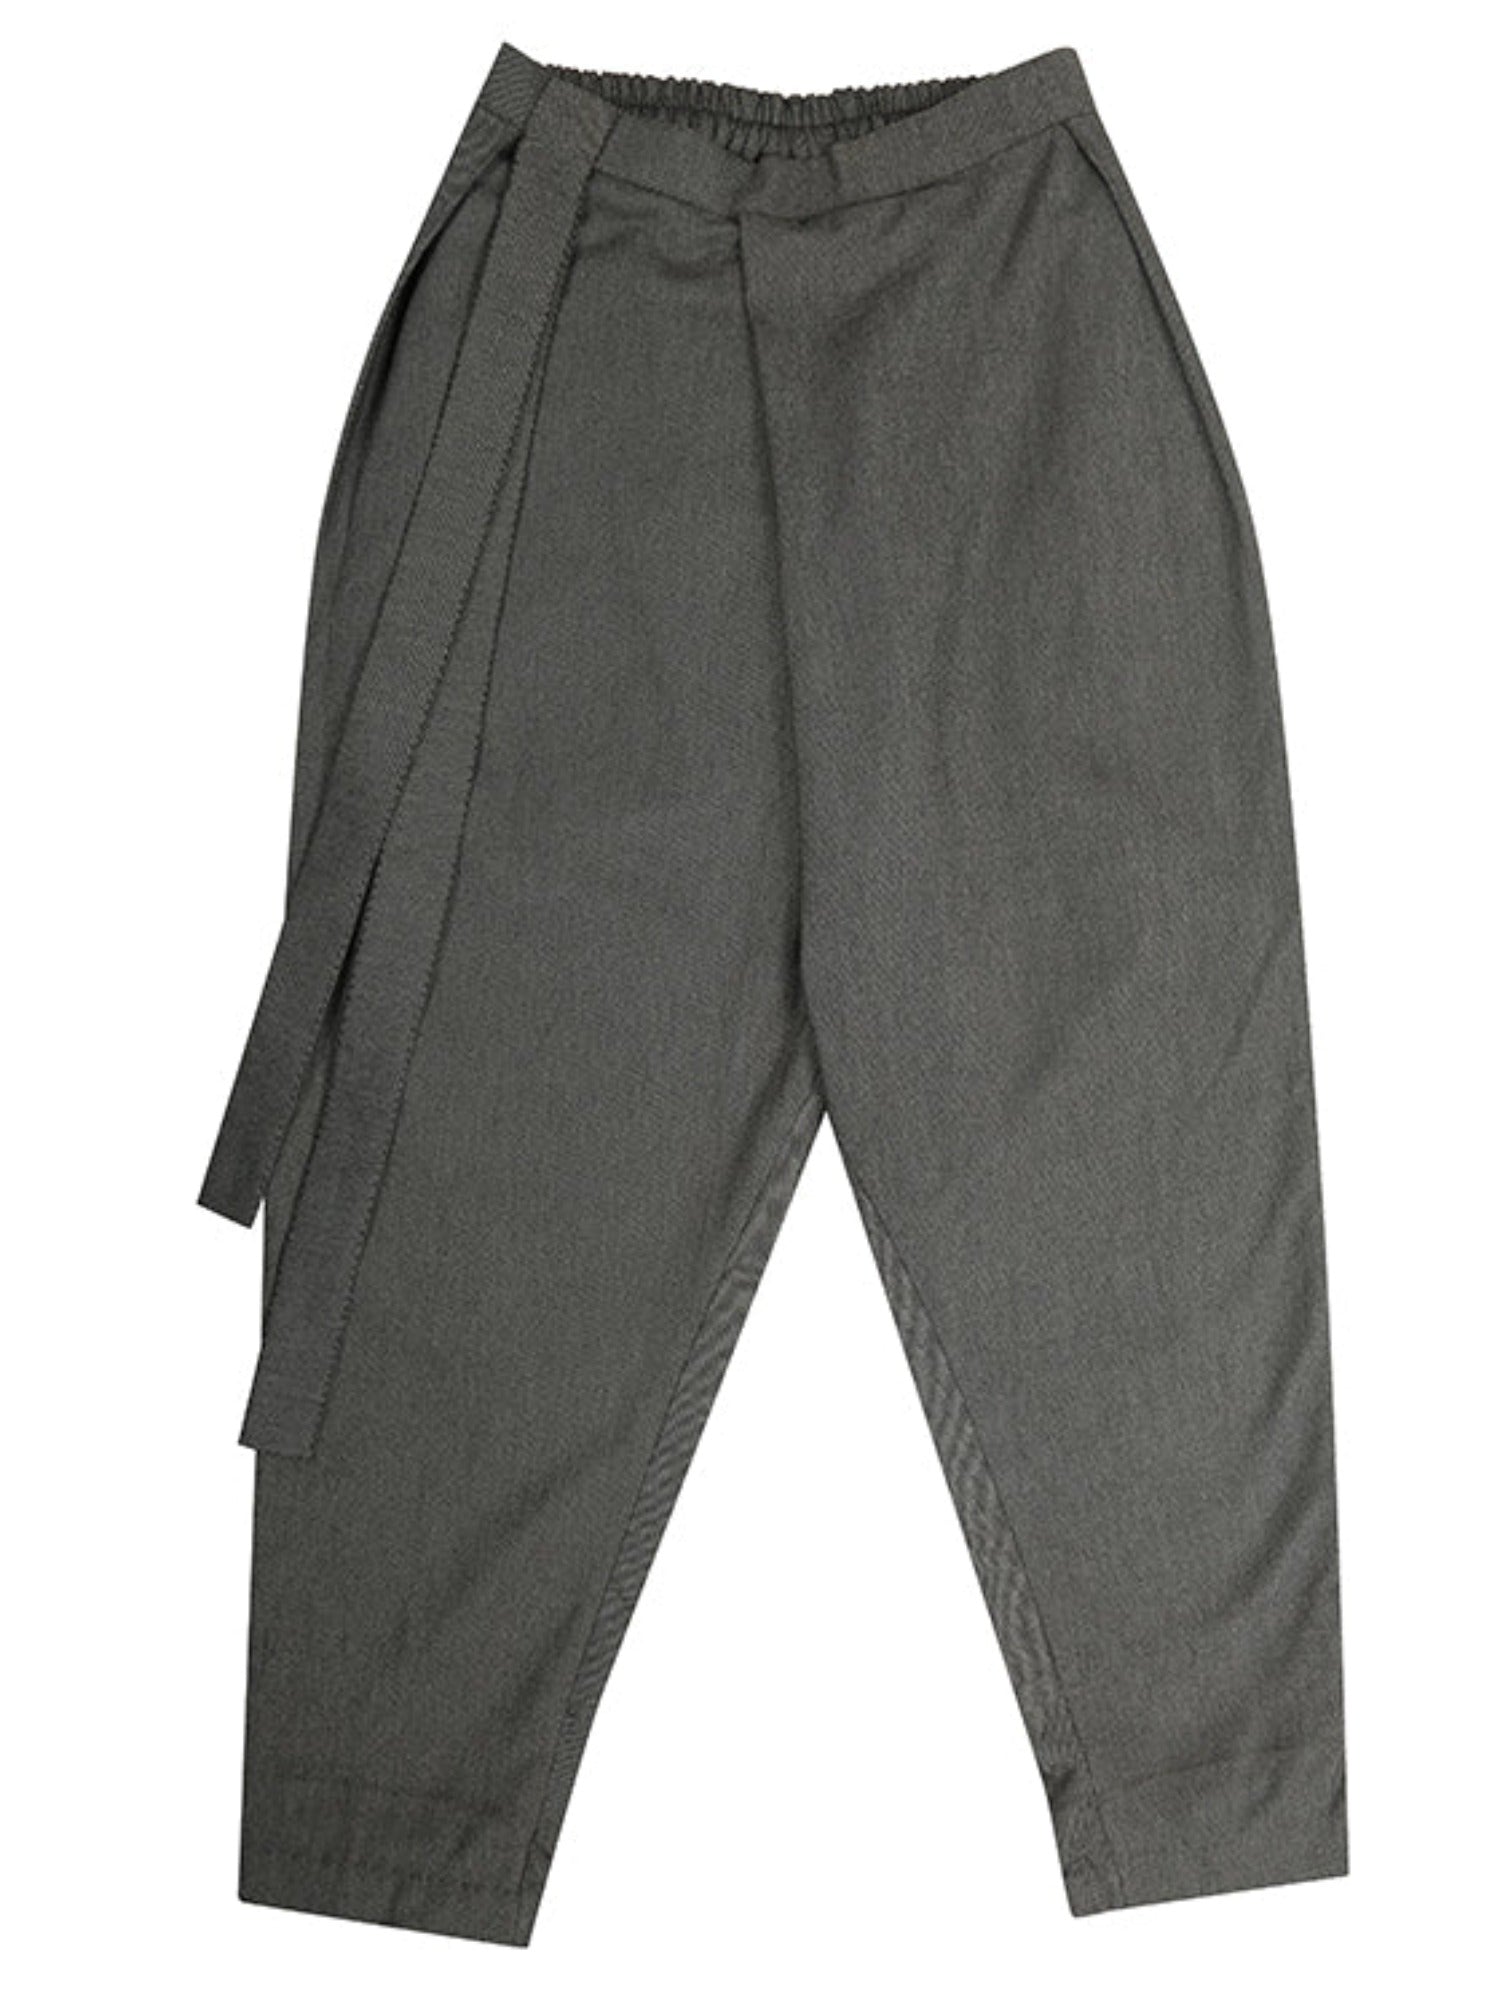 ASOS DESIGN high waist slim peg trouser in grey linen  ASOS